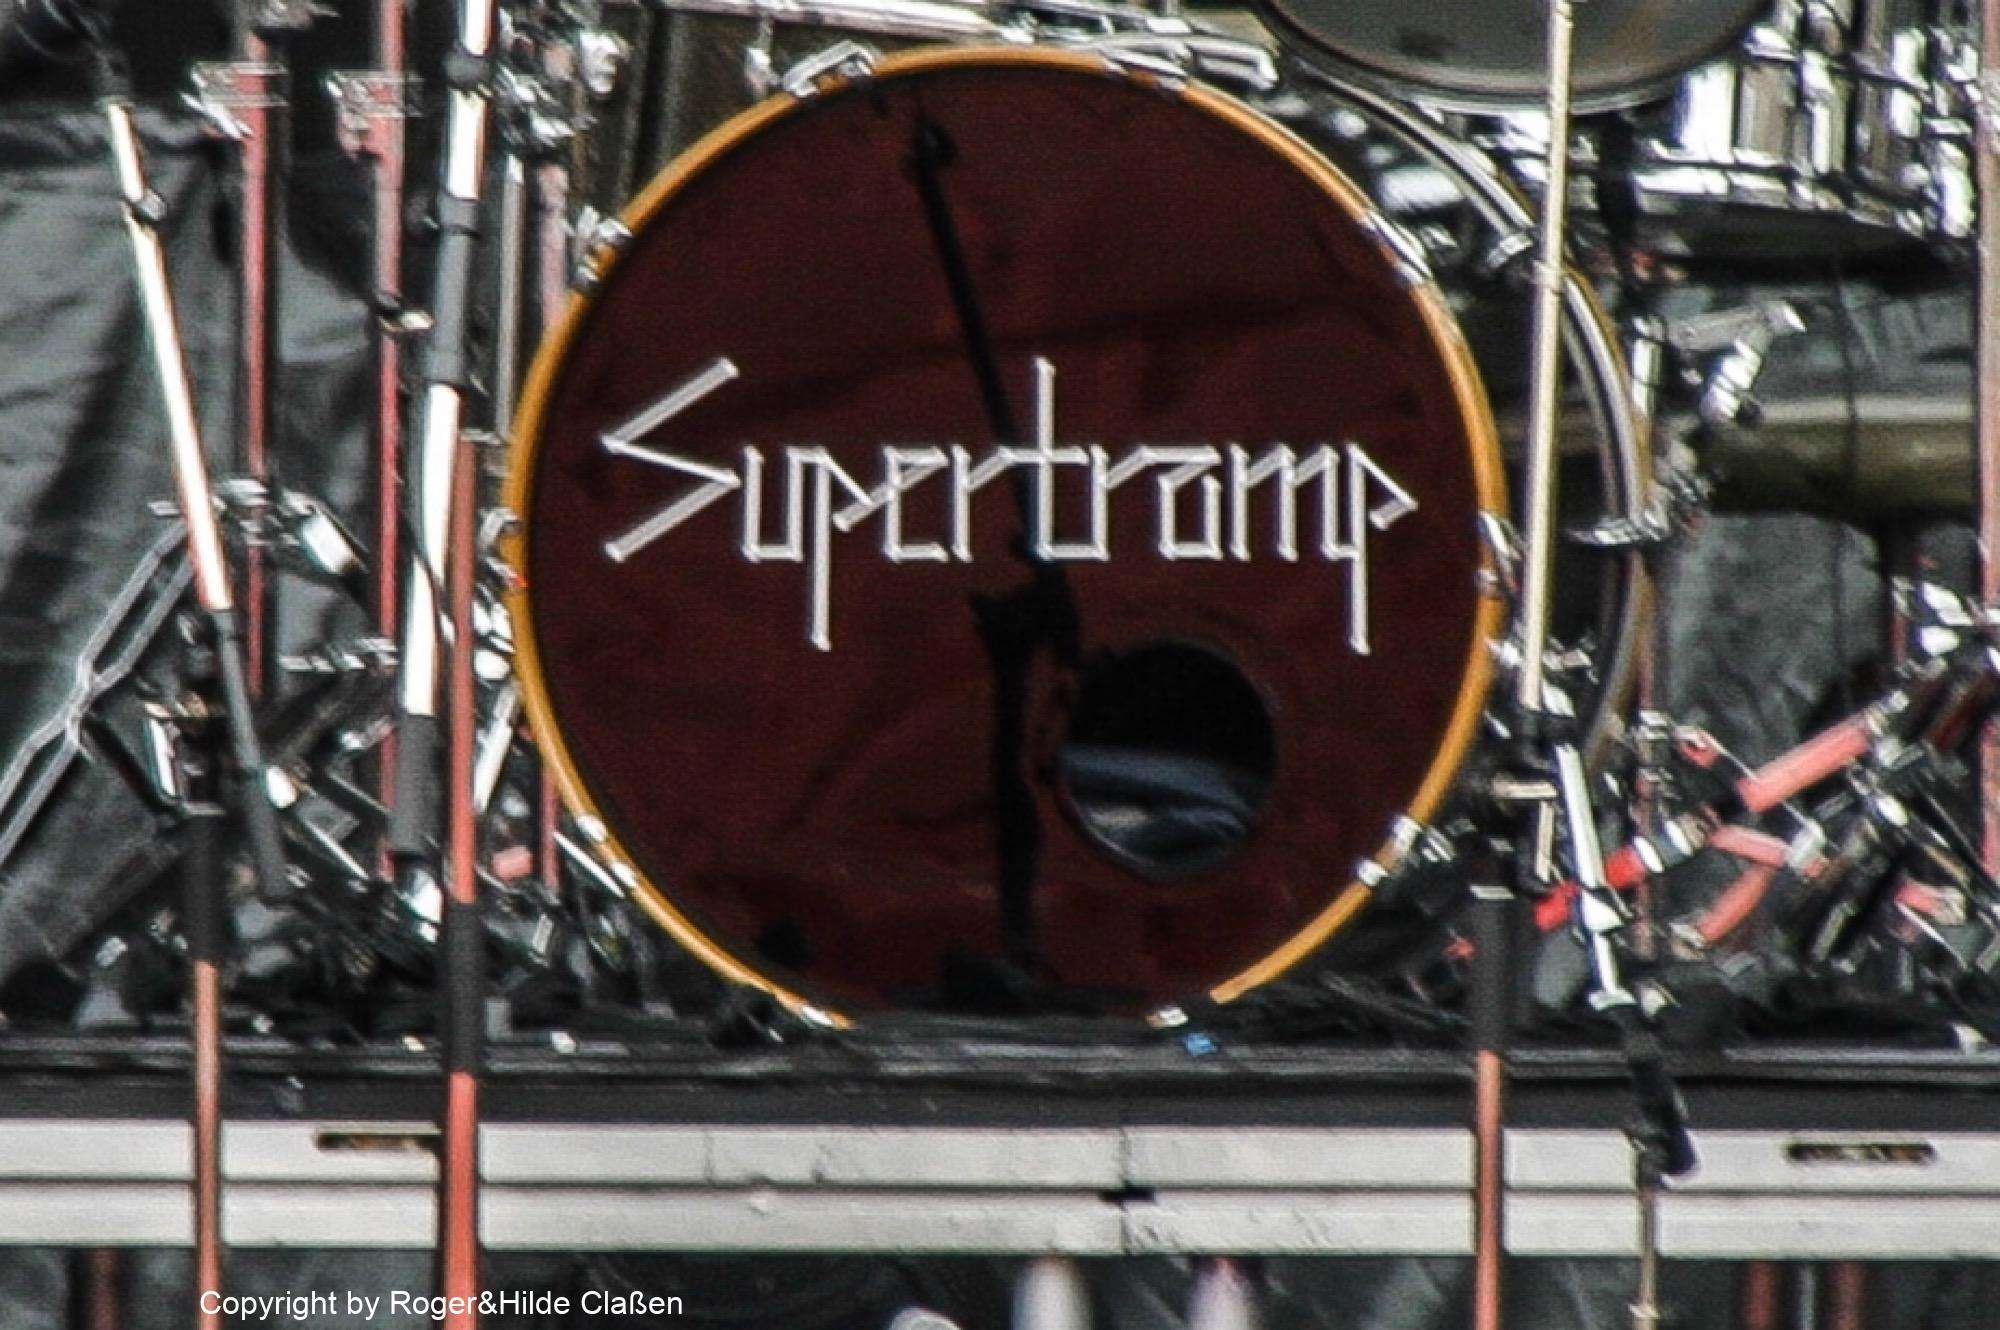 Supertramp war eine erfolgreiche britische Band der 1970er und 1980er Jahre. Ich (Roger) war ein großer Fan dieser Band.